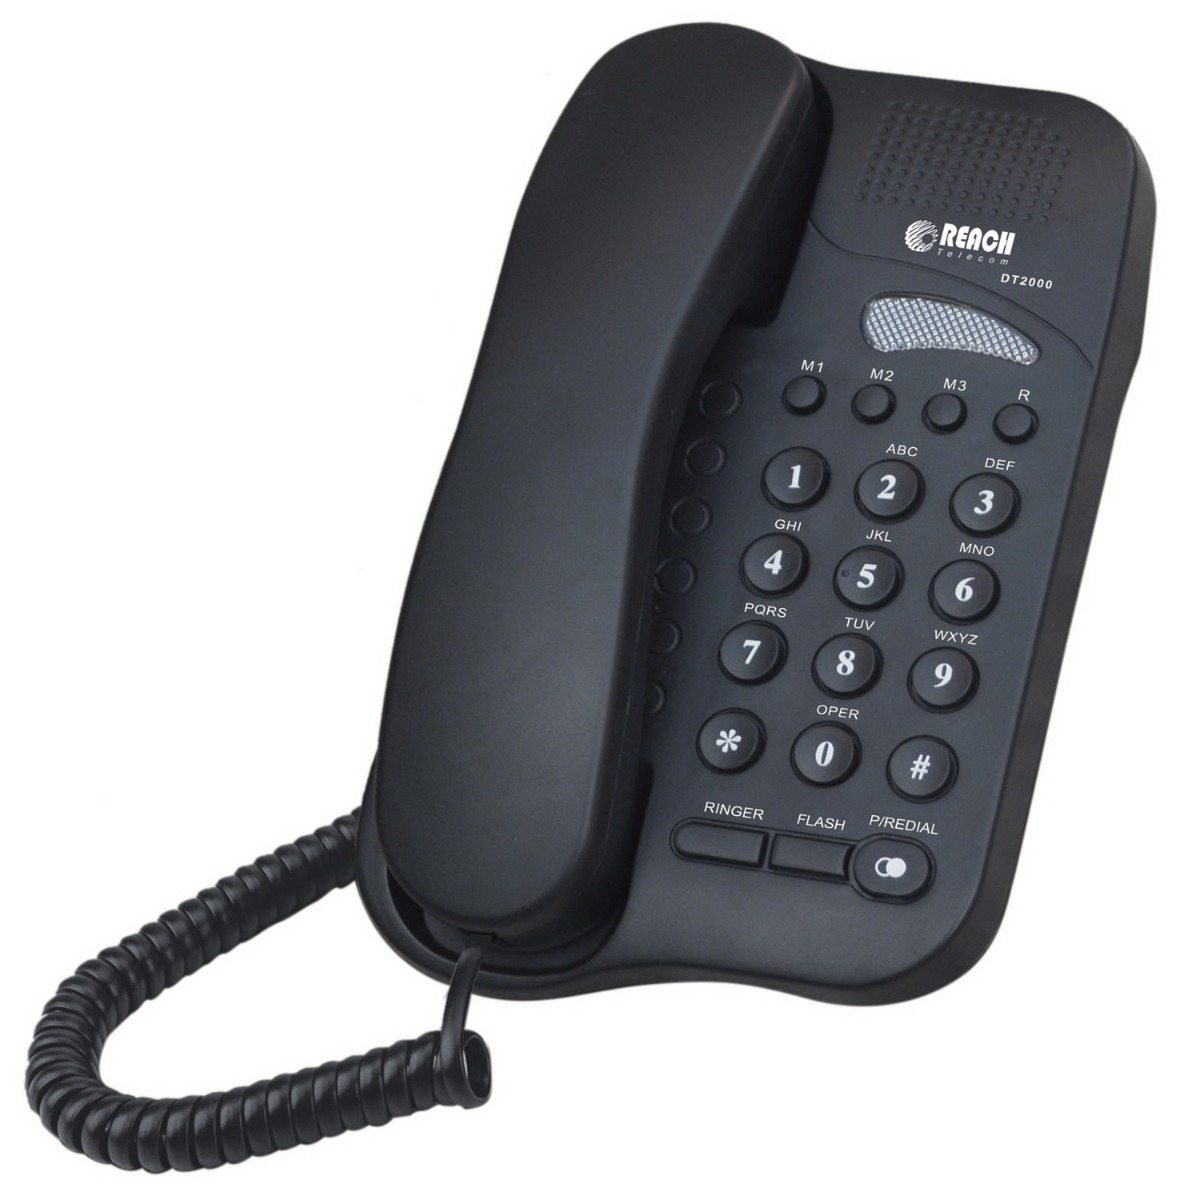 Reach Corded Landline Phone (Mix Color) DT2000